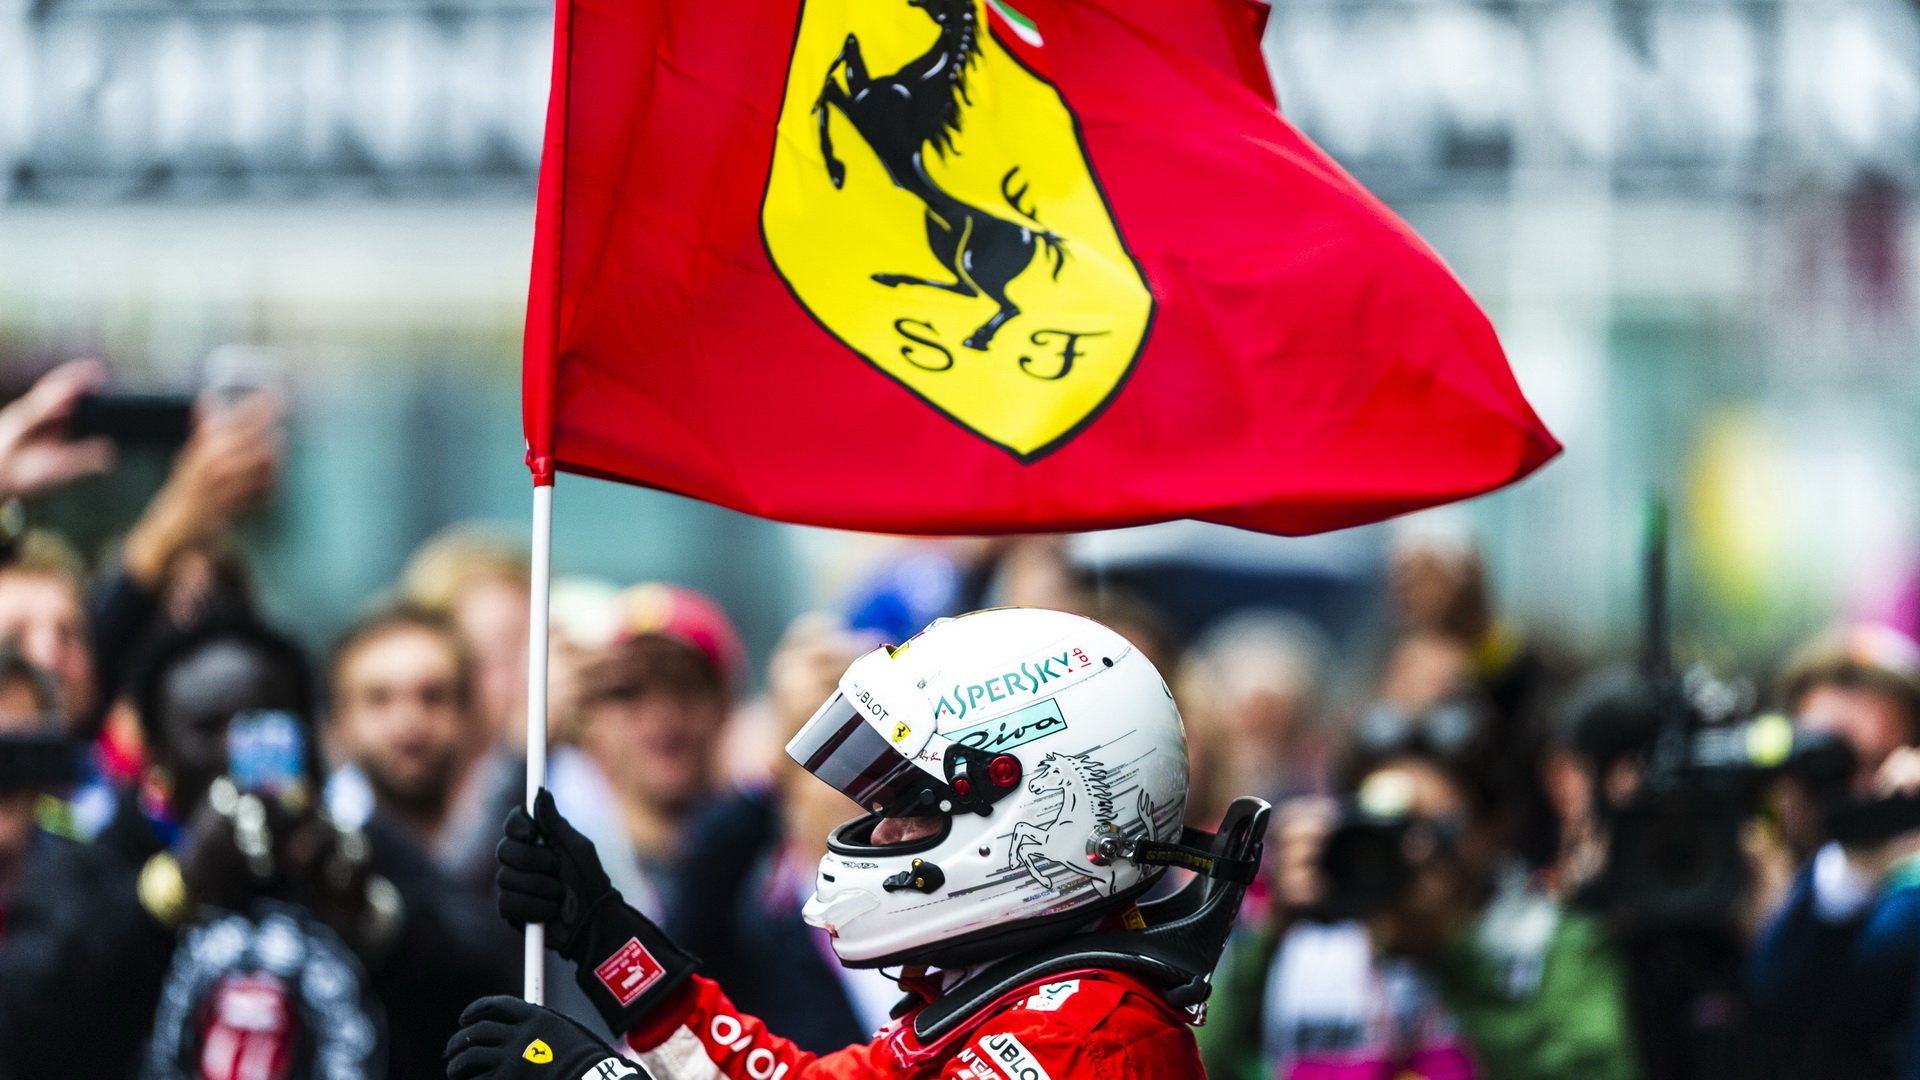 Naposledy se Sebastian Vettel radoval z vítězství v Belgii, od té doby to jde s výsledky Ferrari spíše z kopce